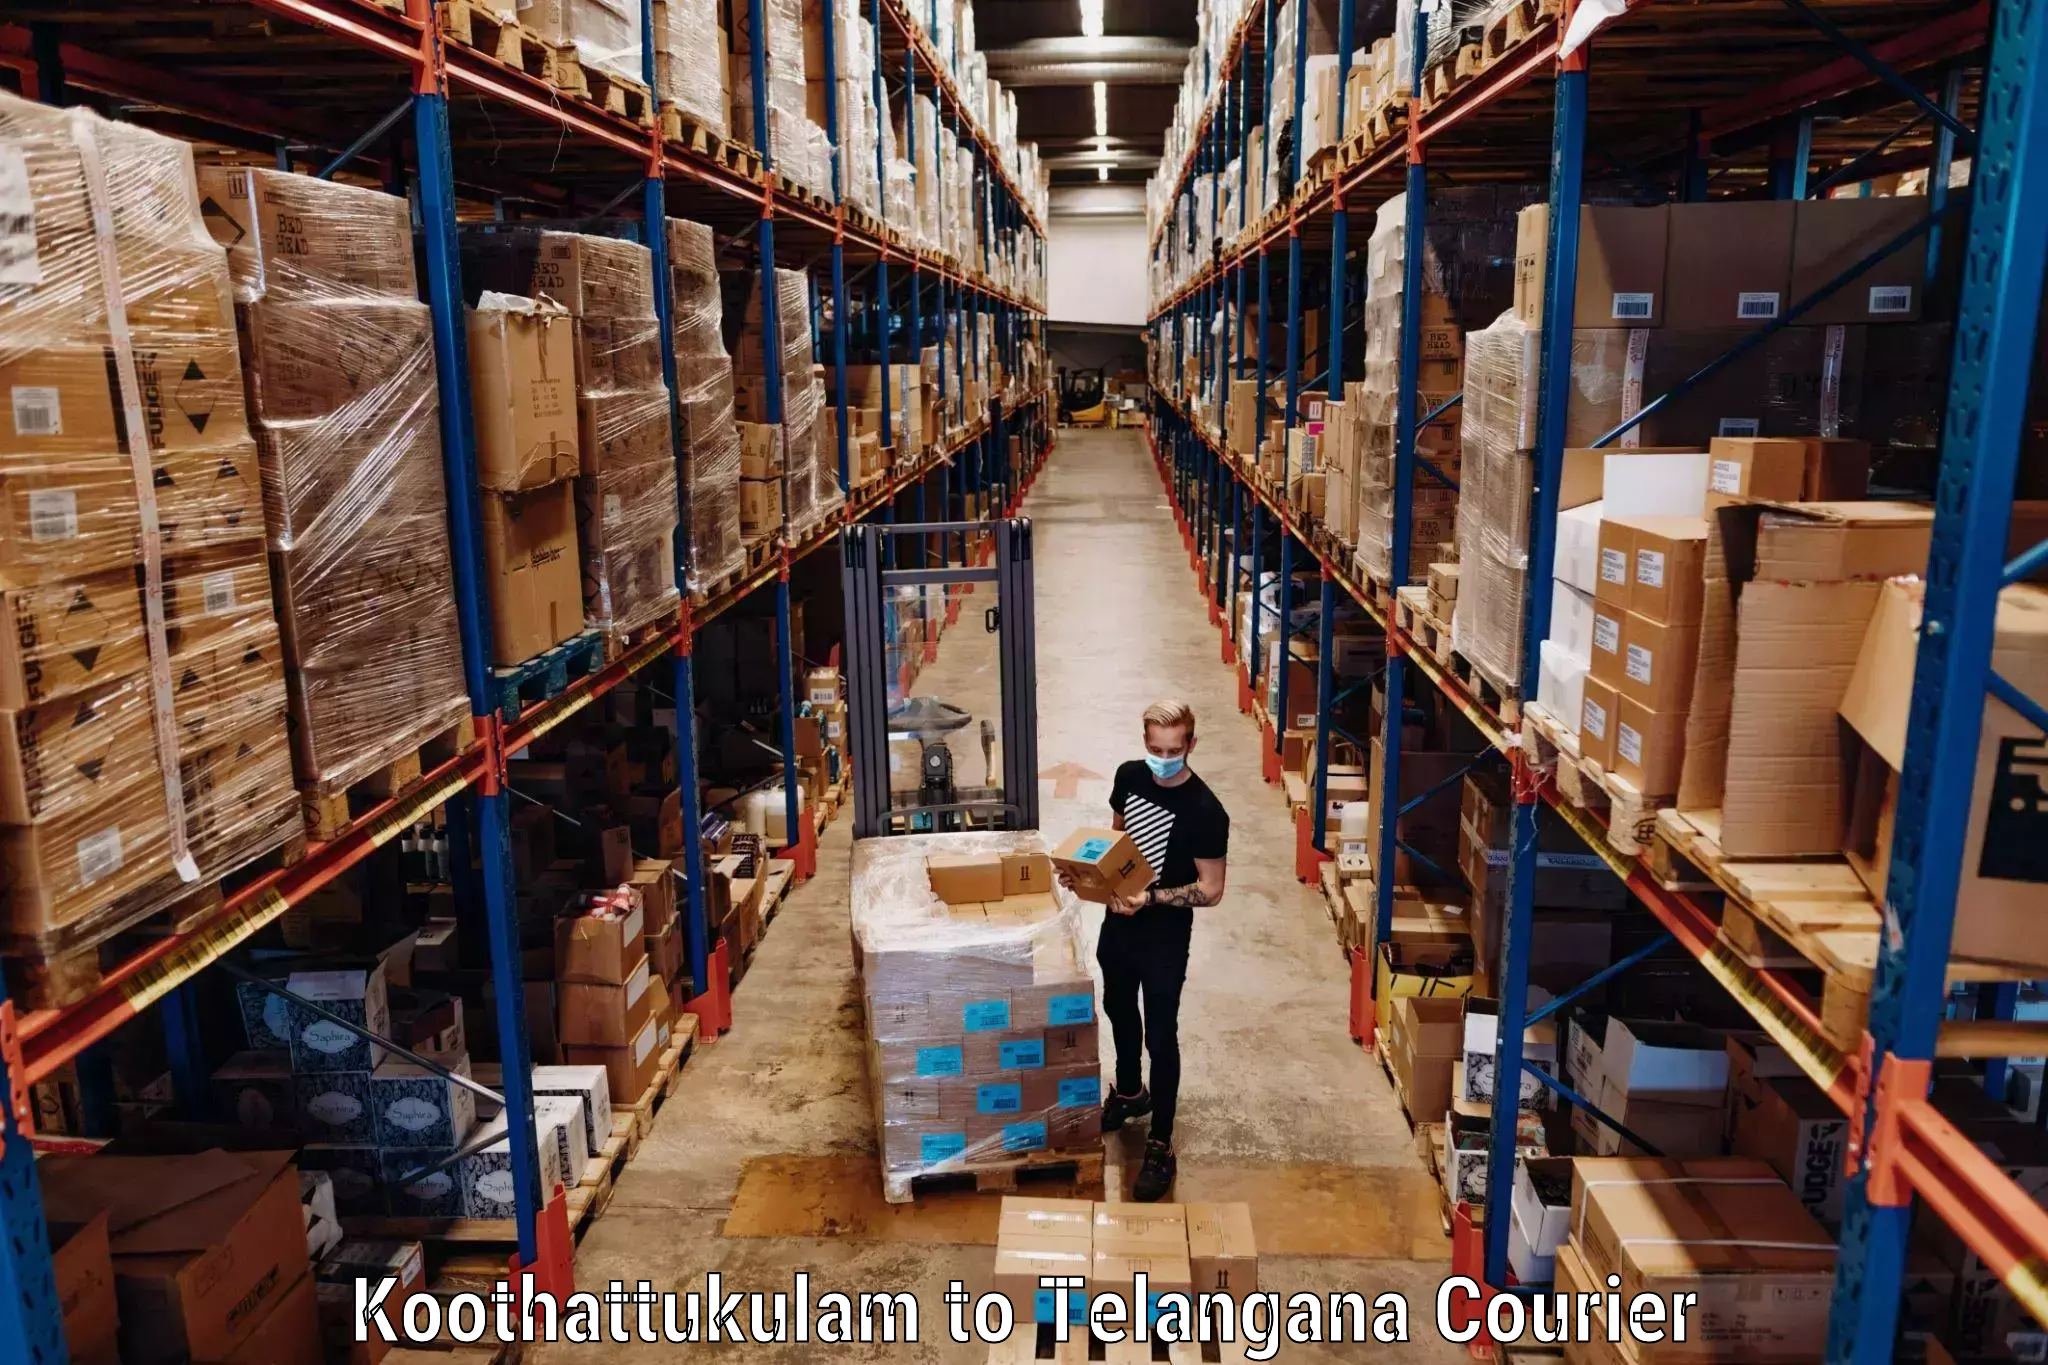 Flexible luggage courier service Koothattukulam to Bodhan